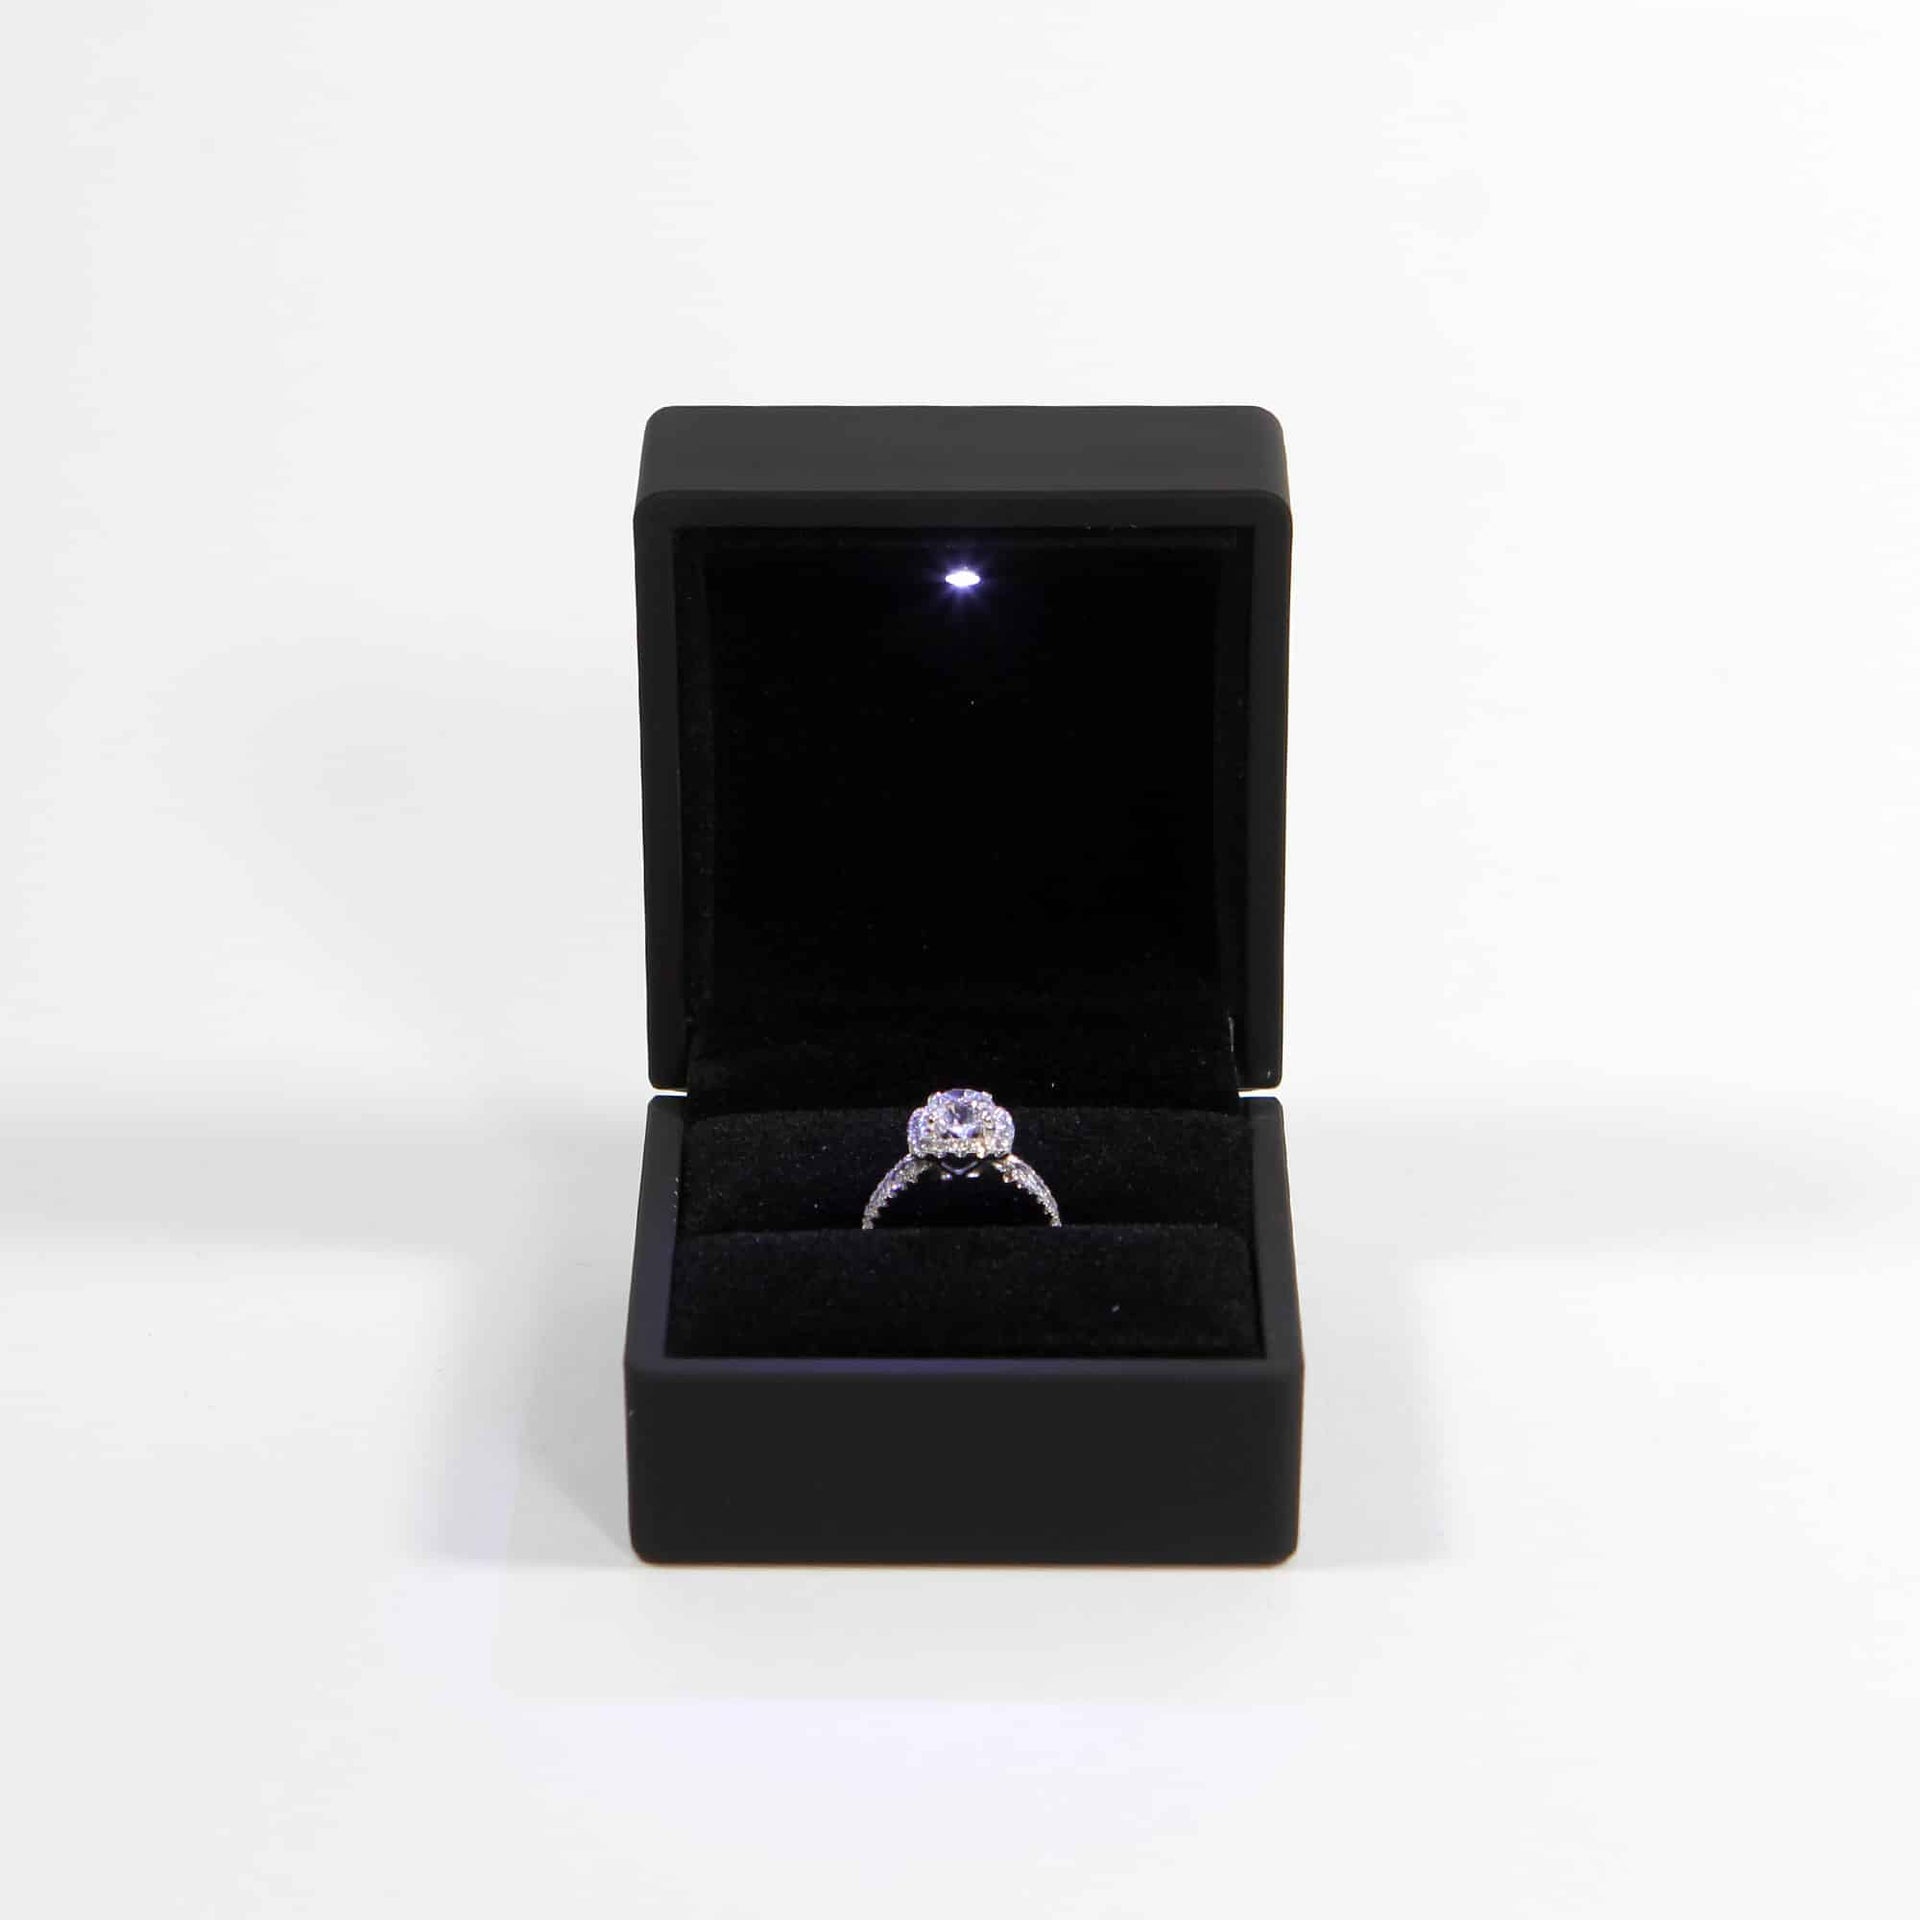 White Glossy LED Ring Light Box